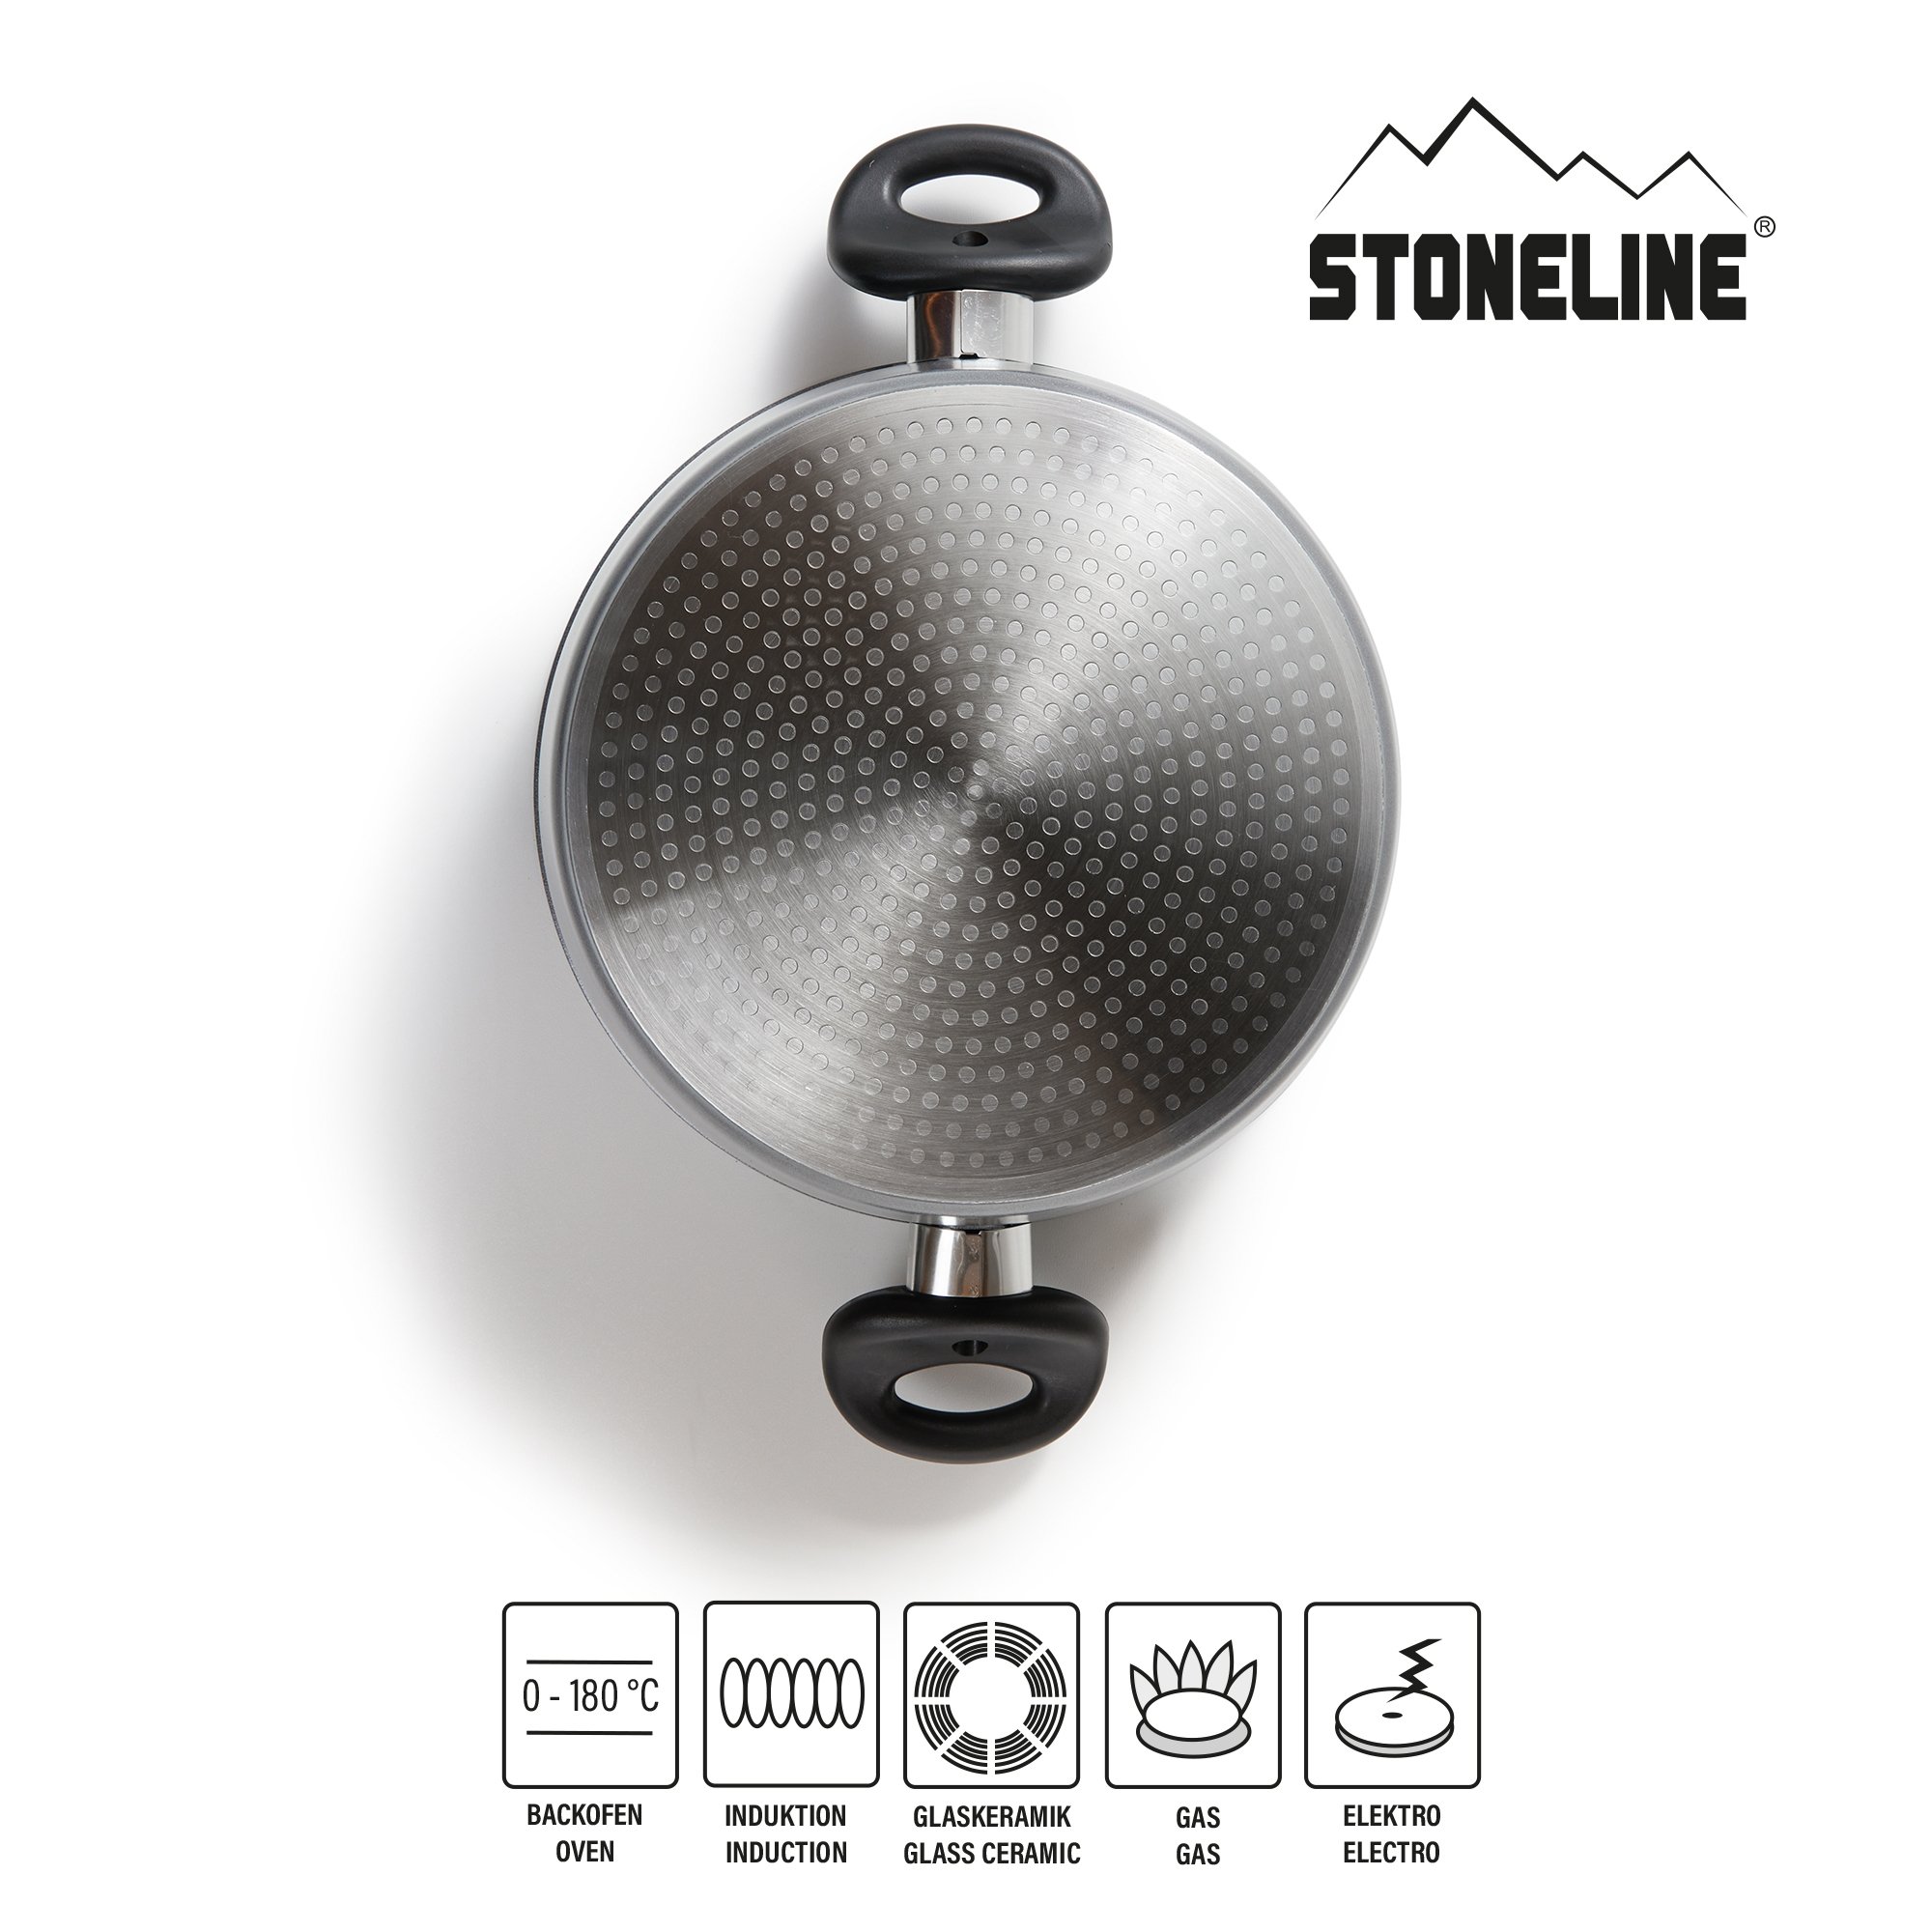 STONELINE® XXXL asadera 32 cm, con tapa de cristal, asadera antiadherente, apta para inducción y horno